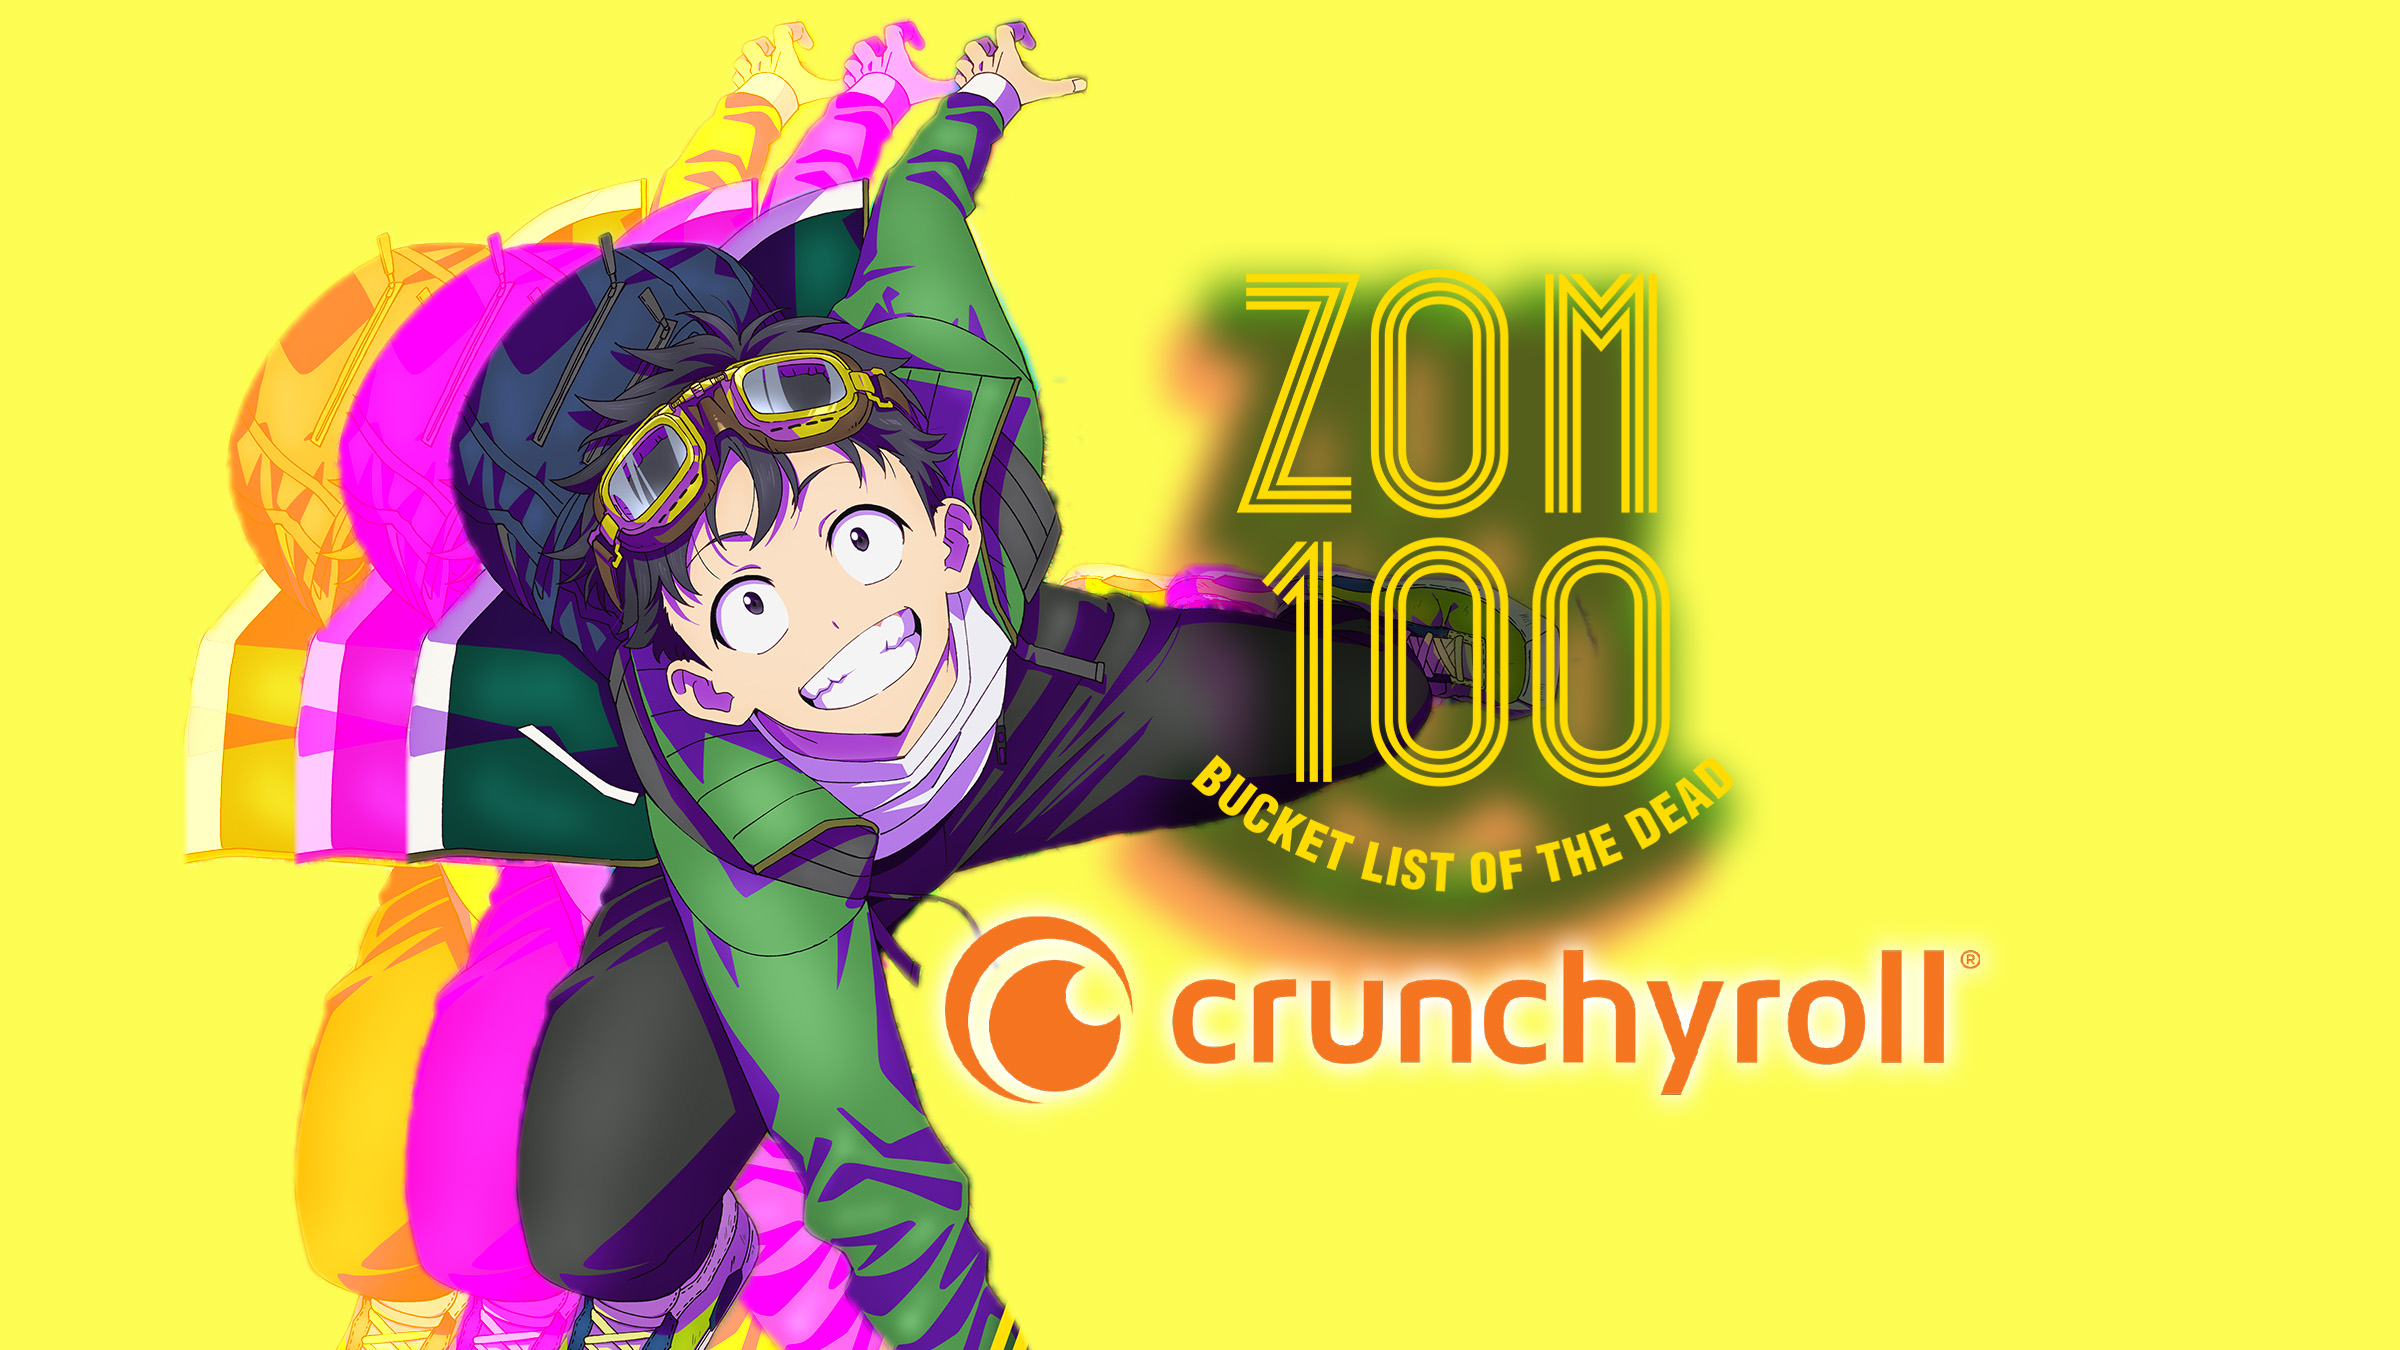 Zom 100 Anime